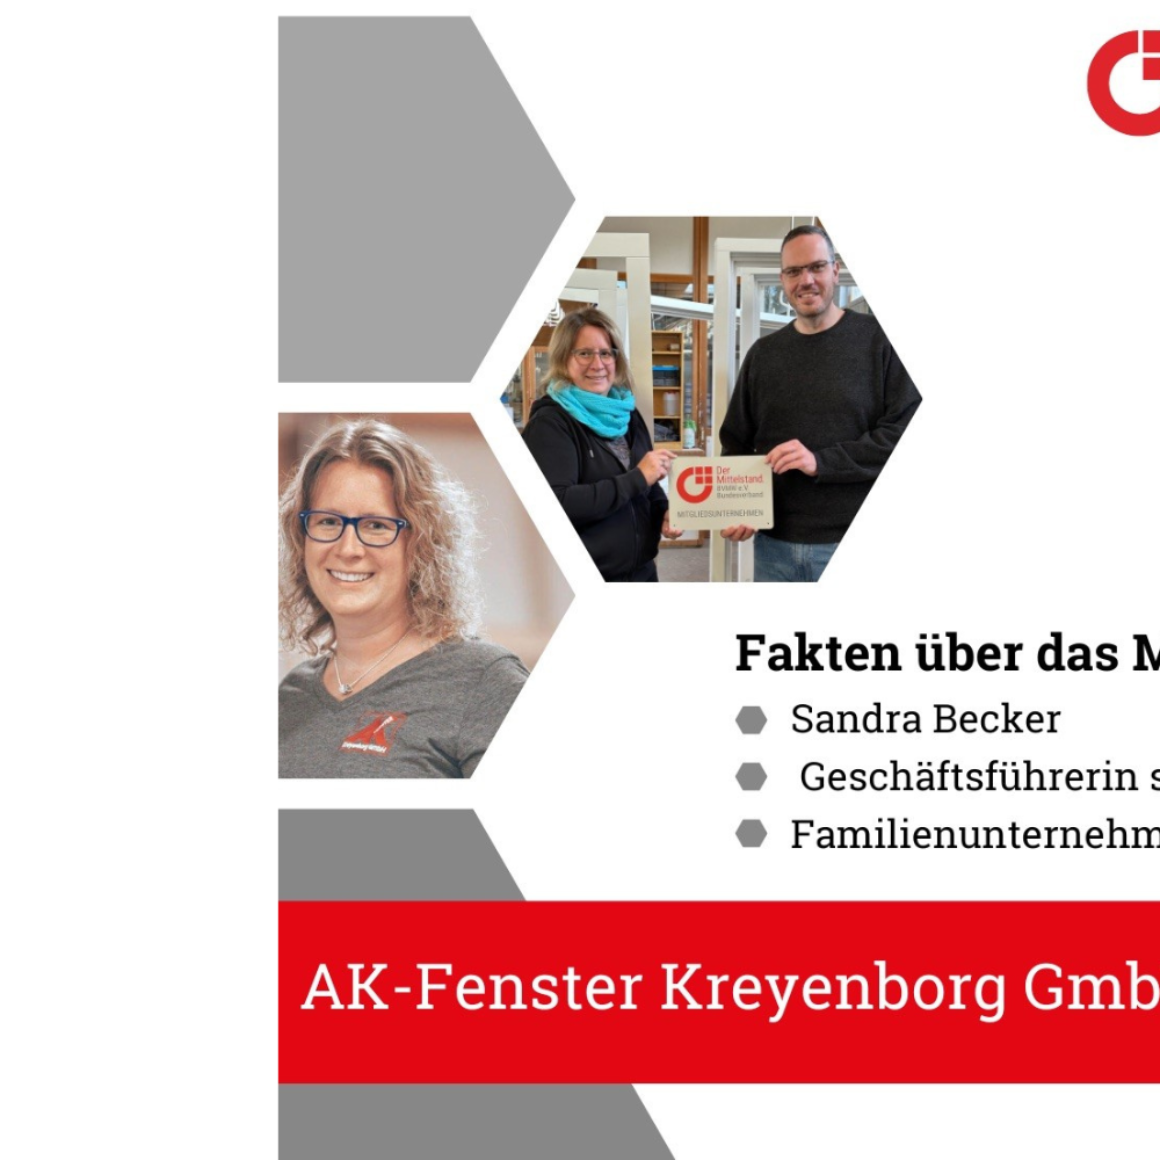 AK Fenster GmbH